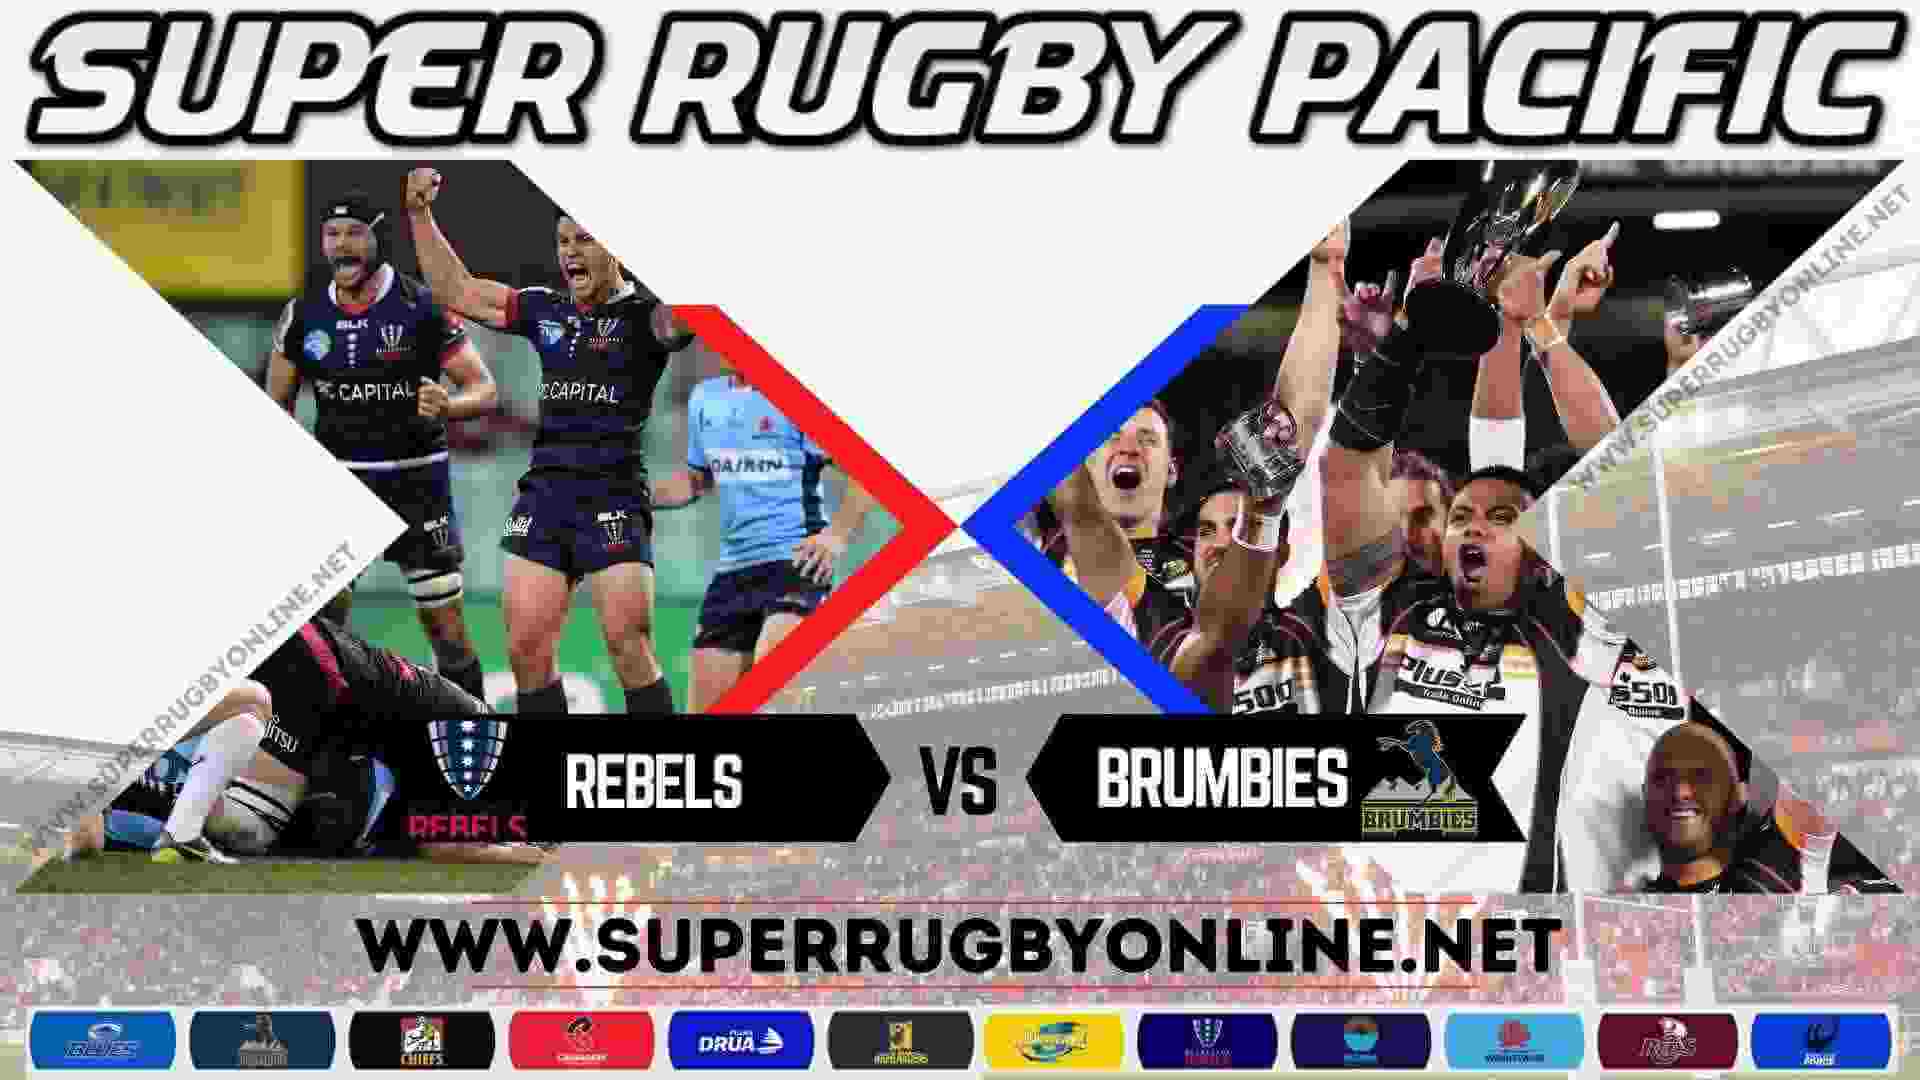 Brumbies Vs Rebels Rugby 2018 Live Stream